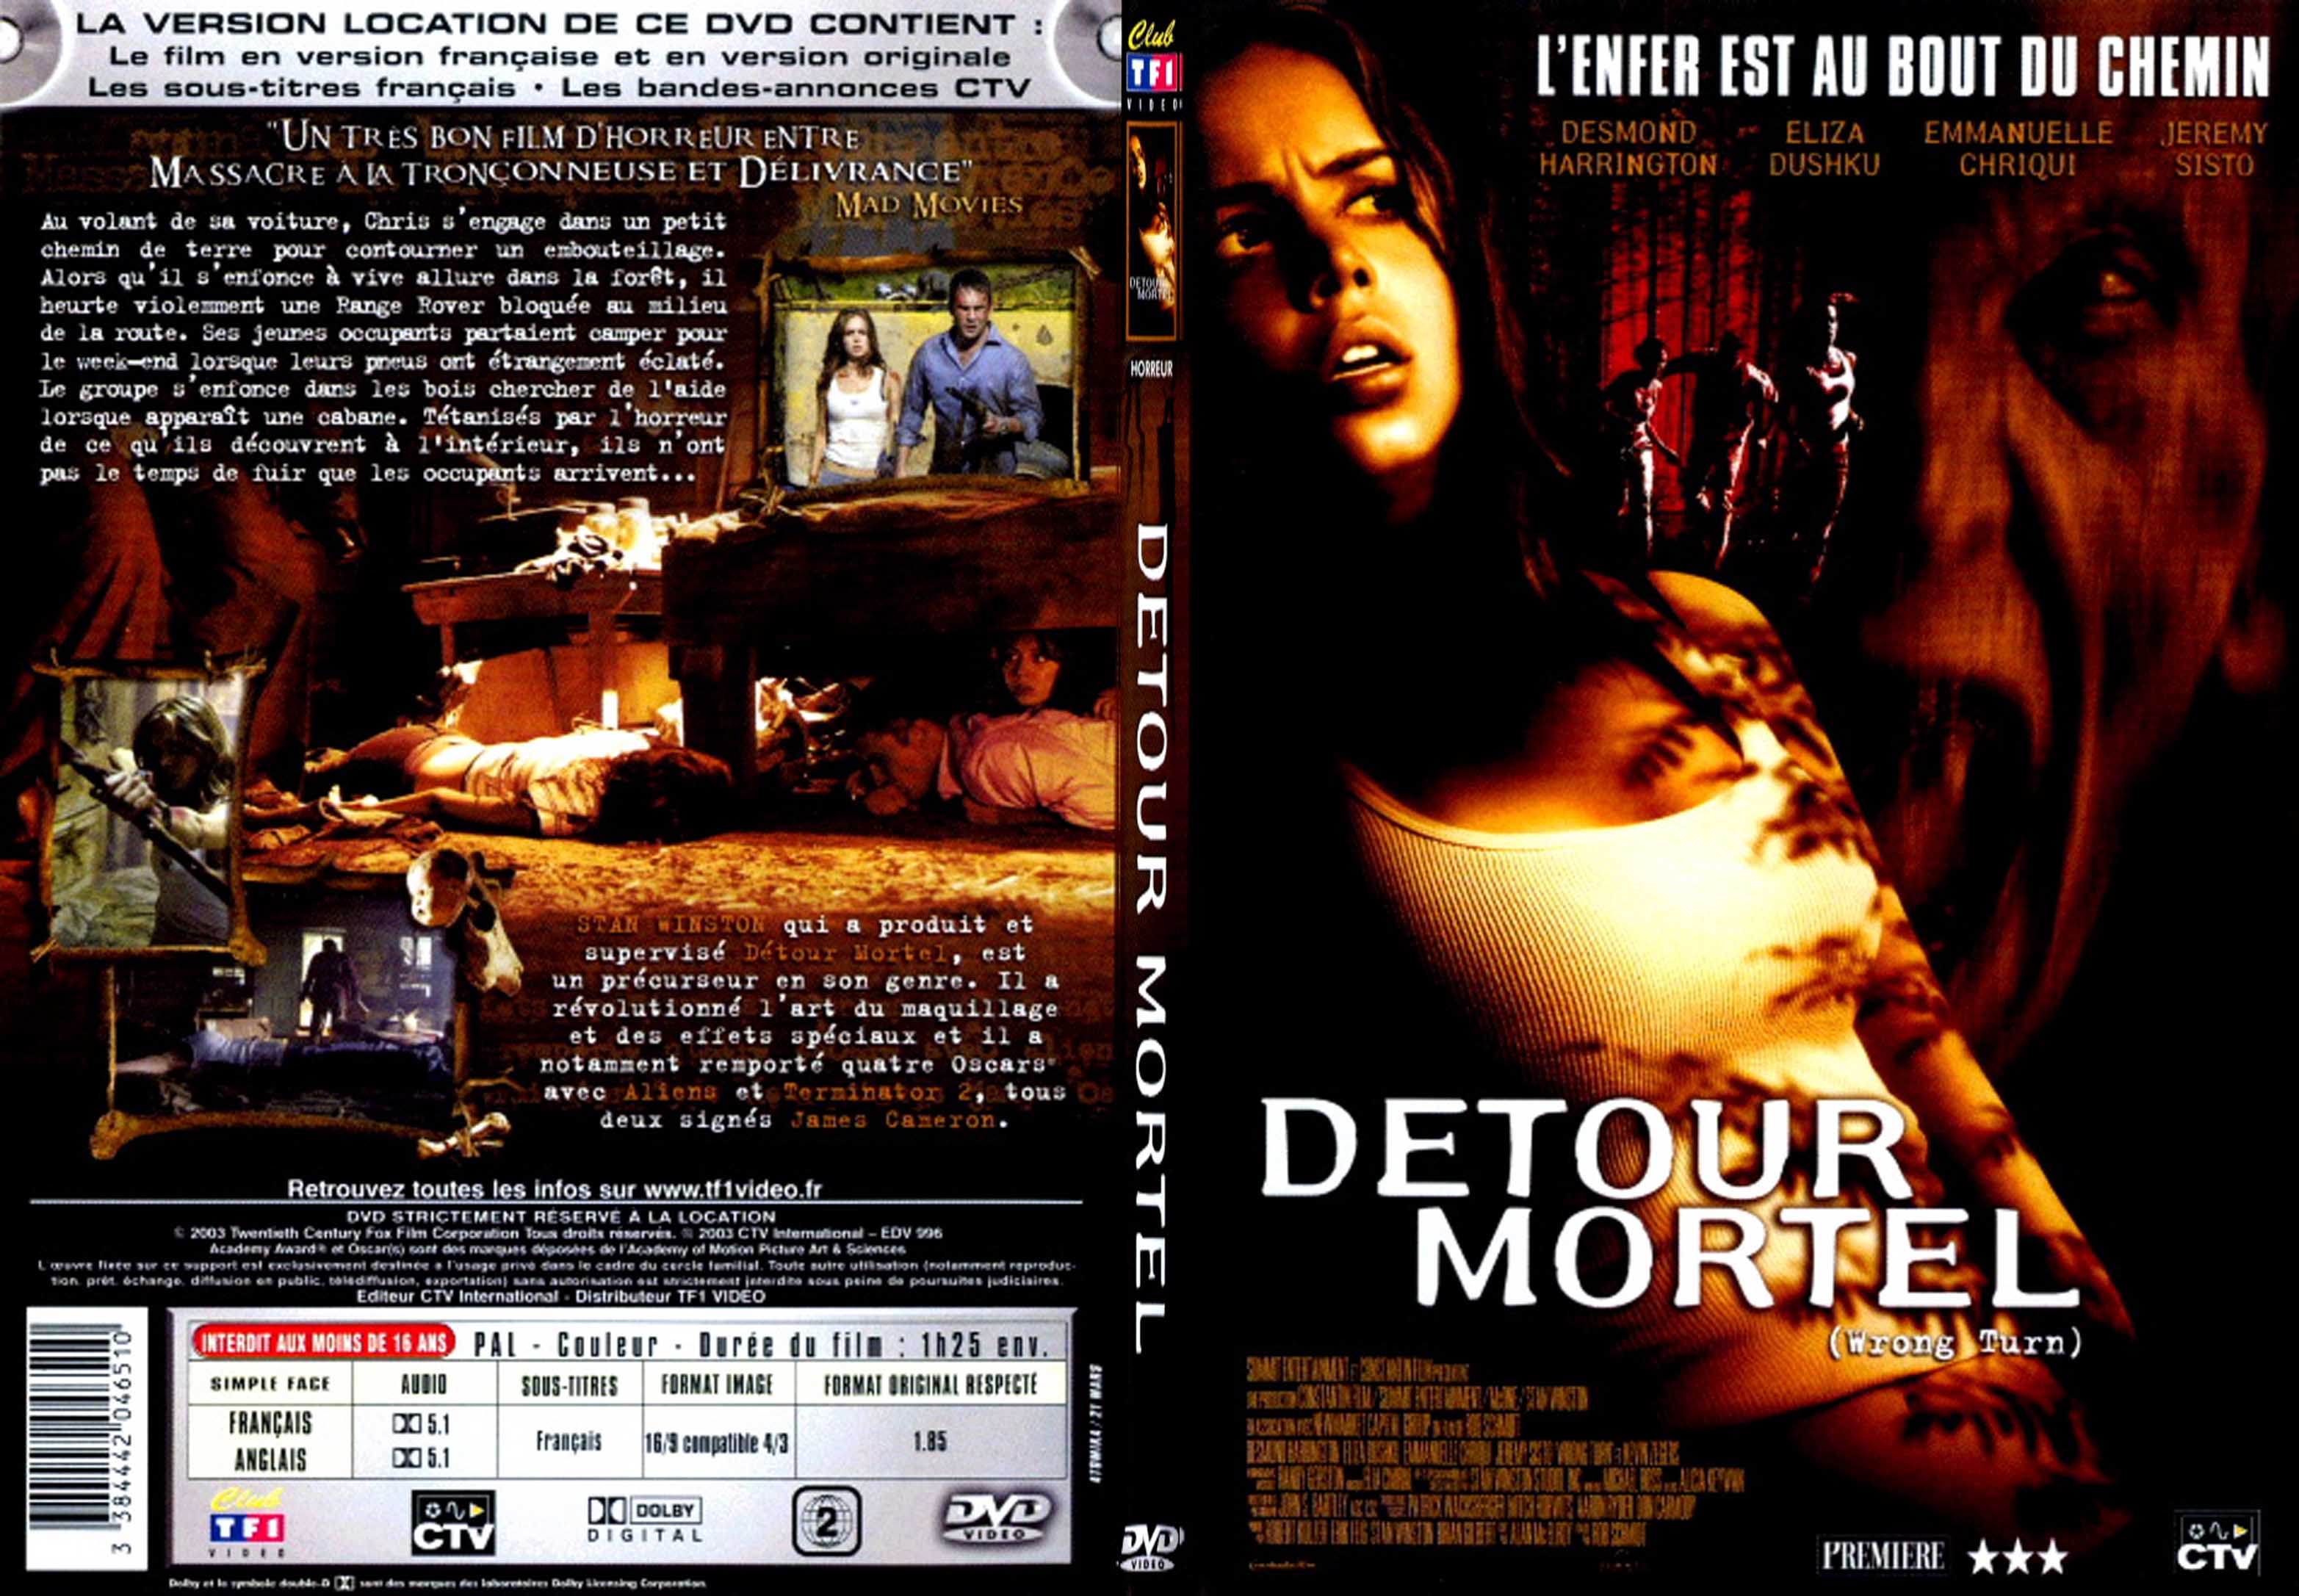 Jaquette DVD Detour mortel - SLIM